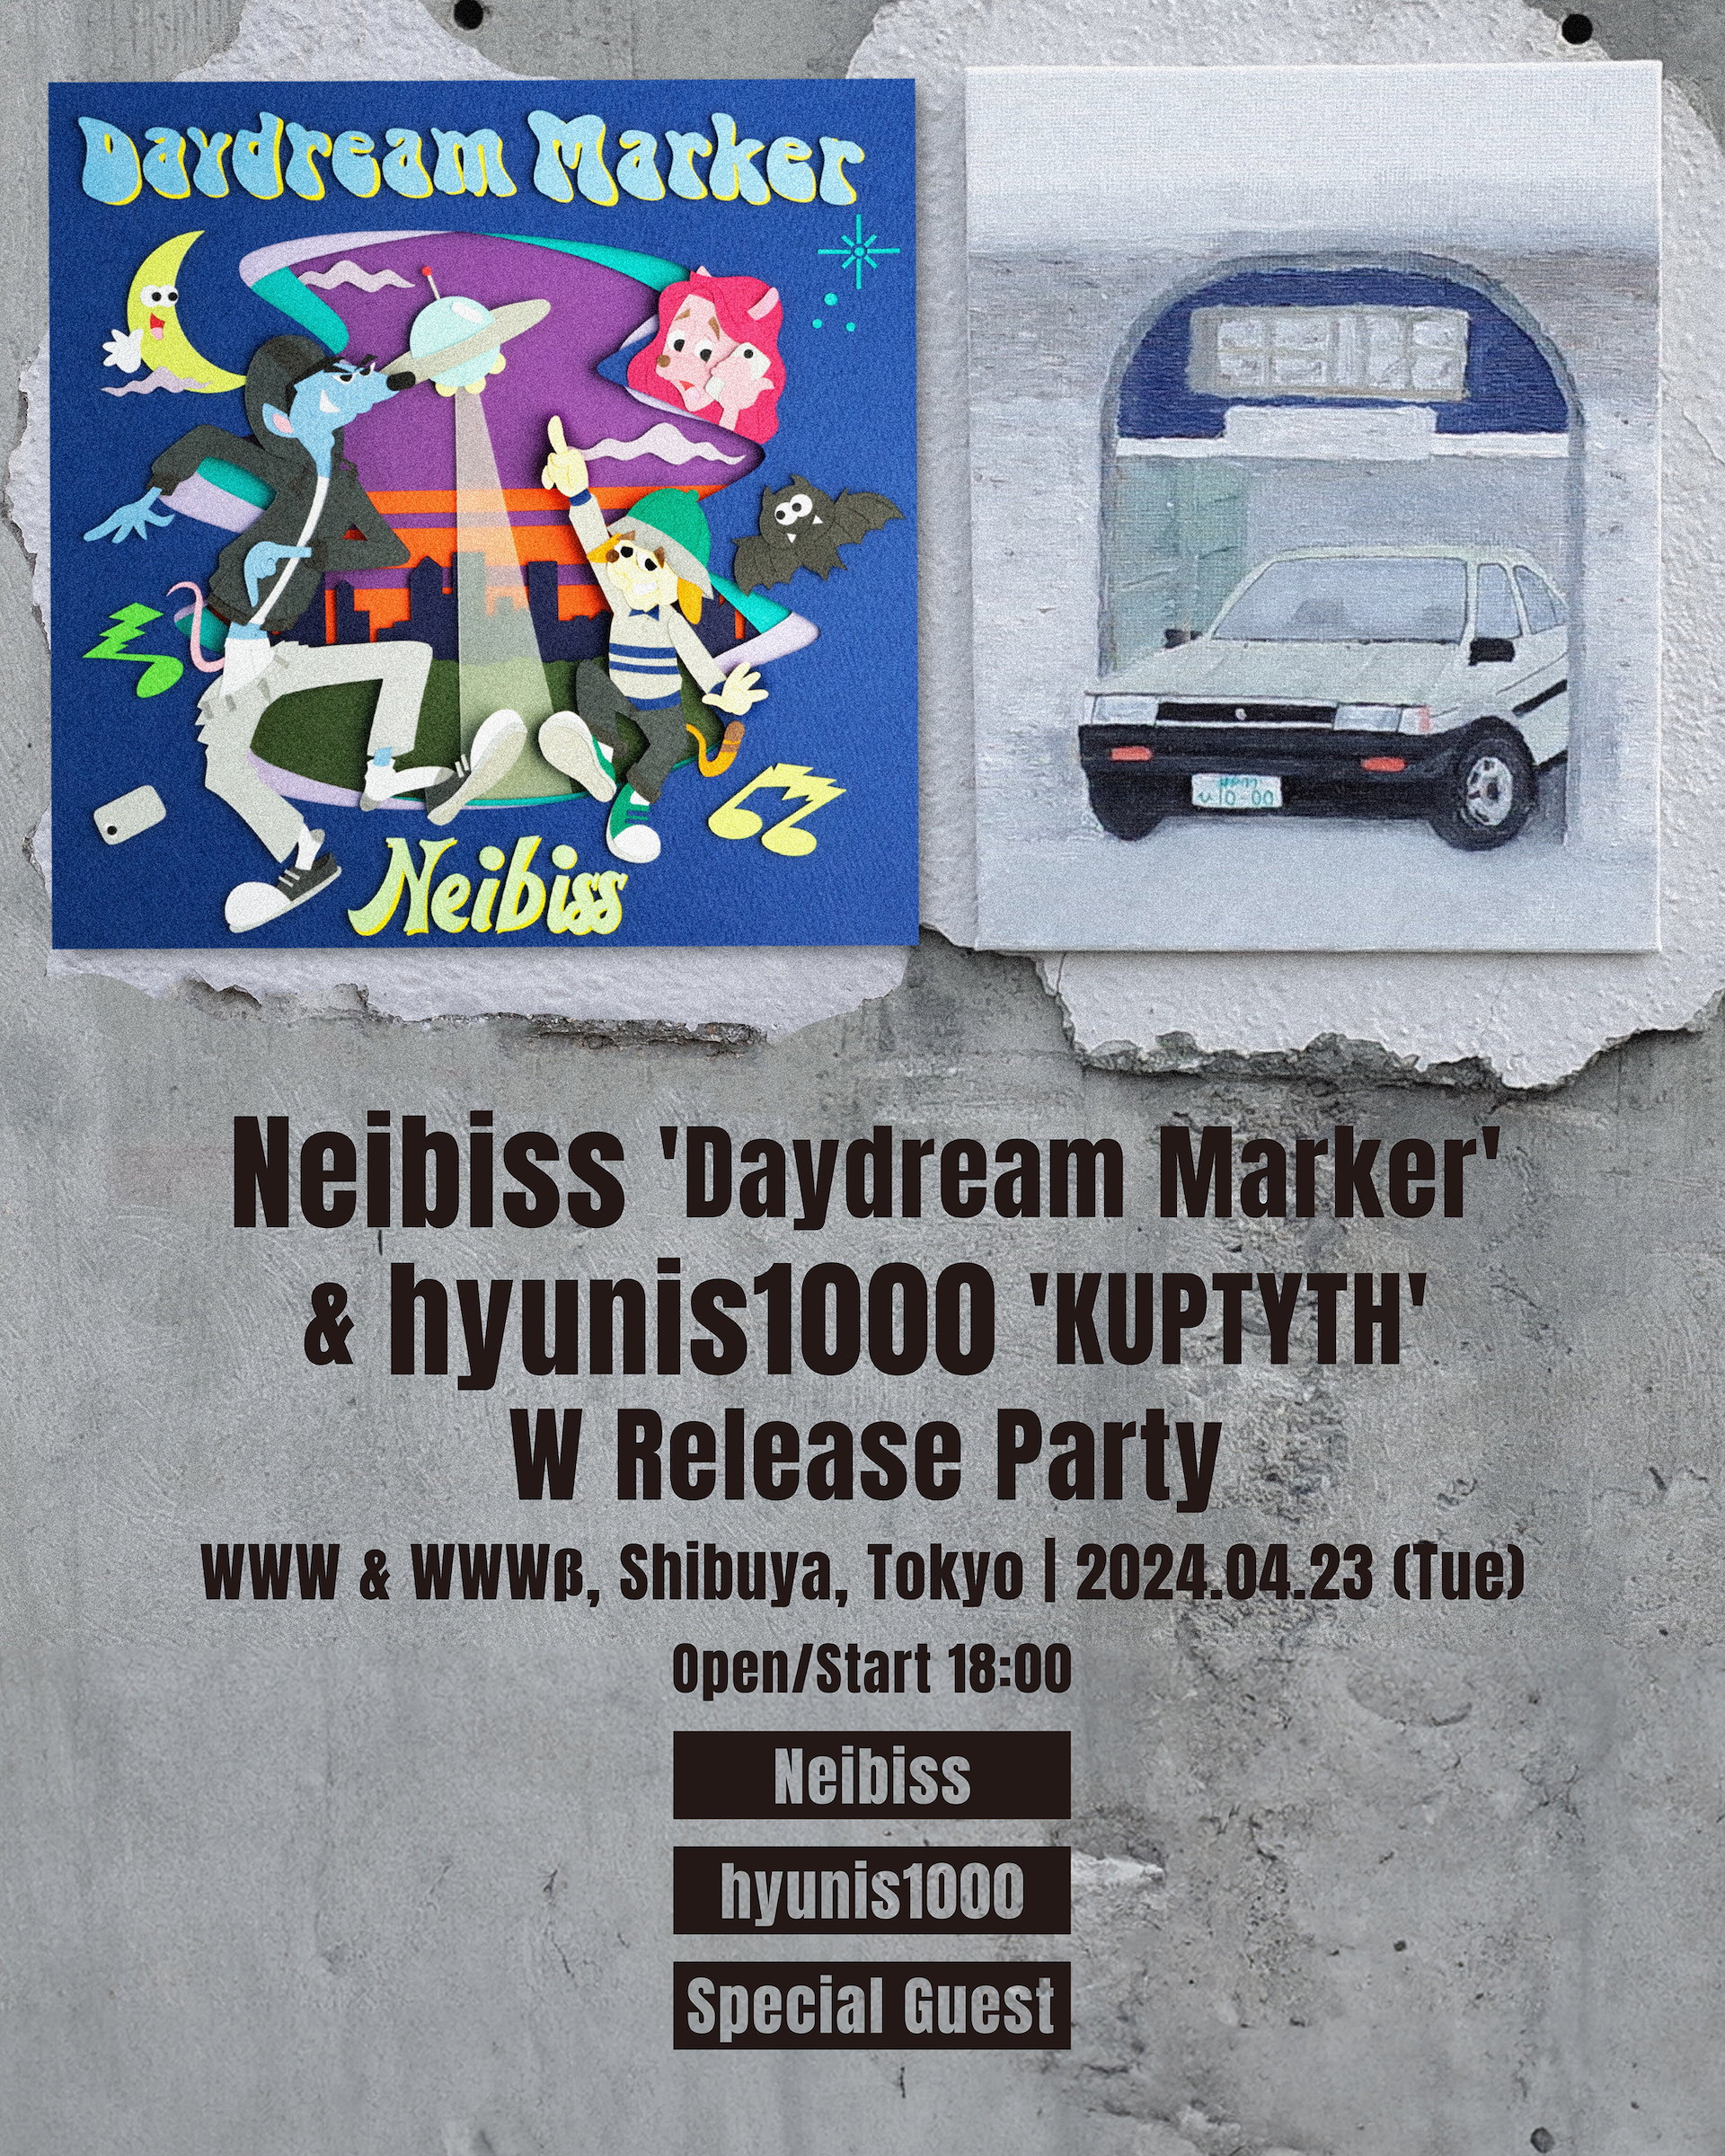 Neibiss、最新作『Daydream Marker』のリリース・パーティーが決定｜東京はhyunis1000のソロアルバム『KUPTYTH』とのWリリース・パーティー、大阪はNeibiss初のワンマン公演に music240131-neibiss2